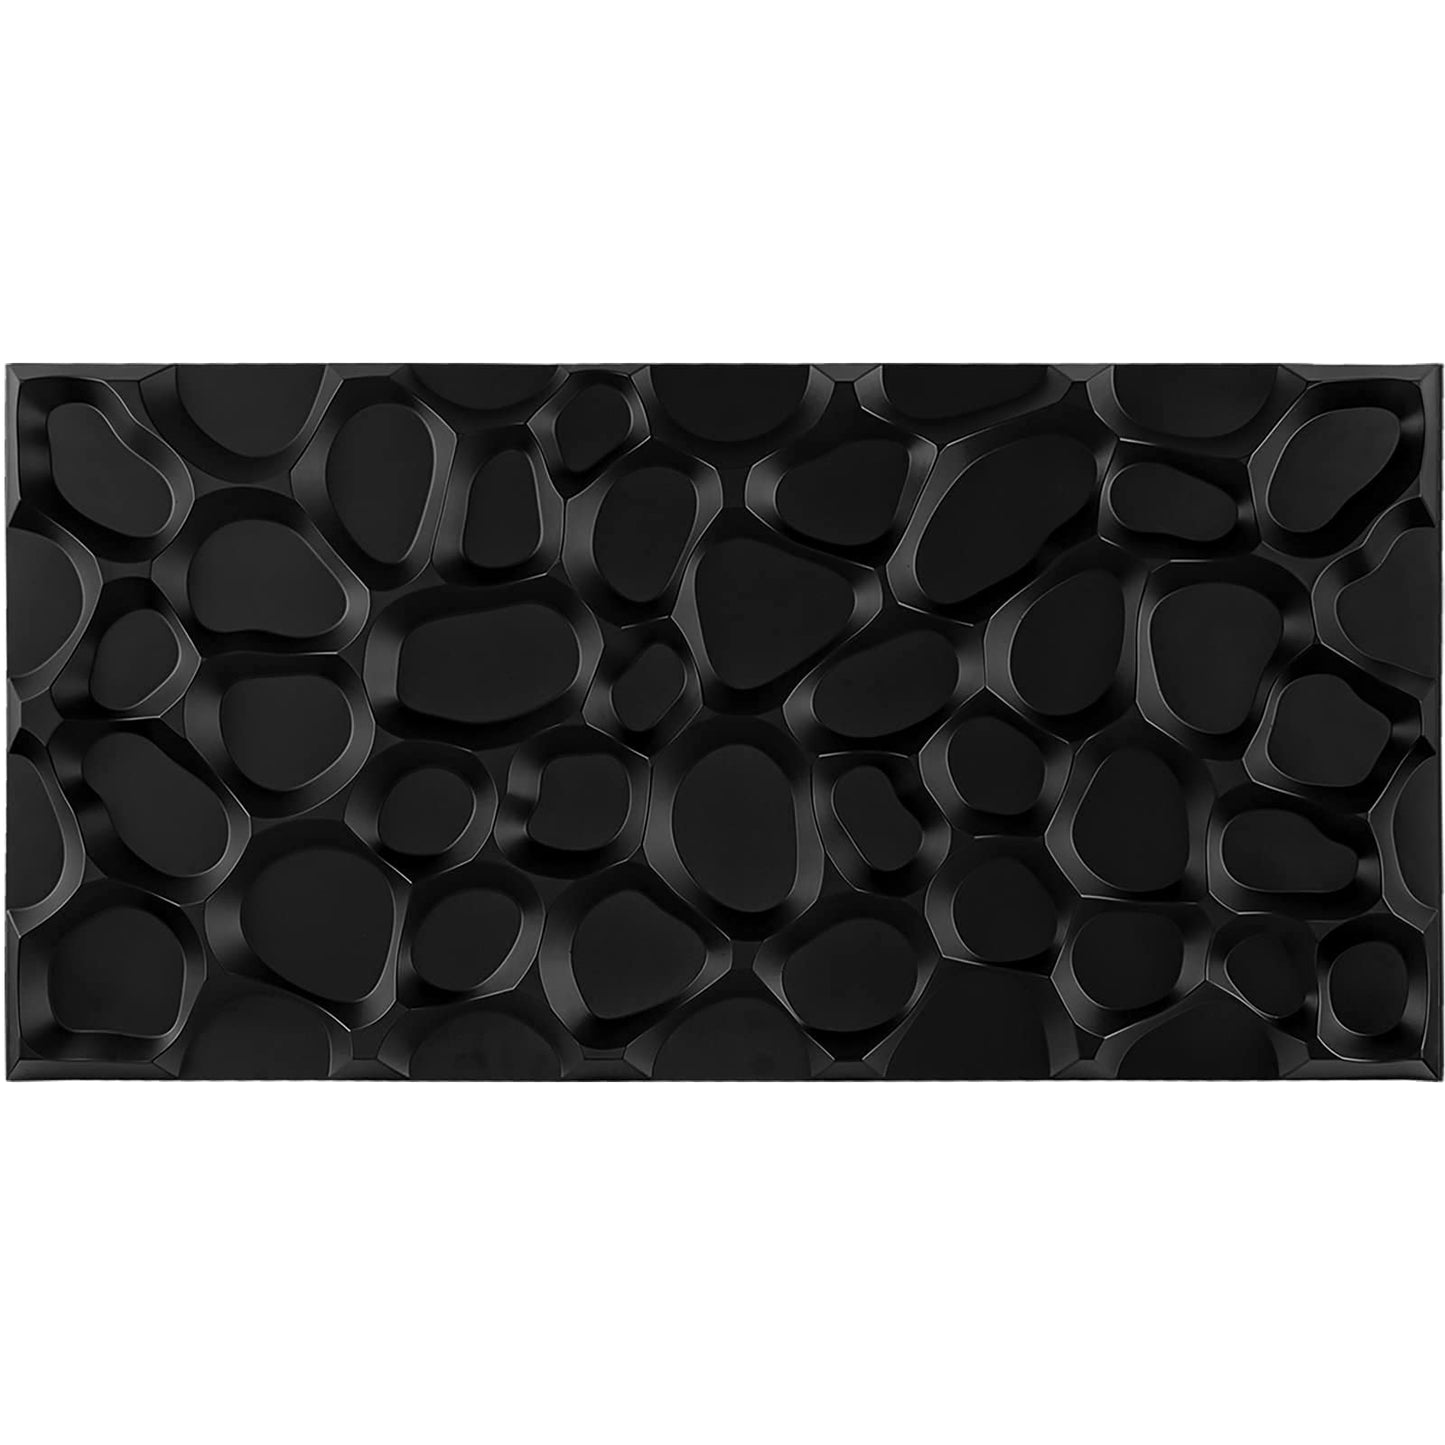 Large PVC 3D Wall Panel (6PCS)